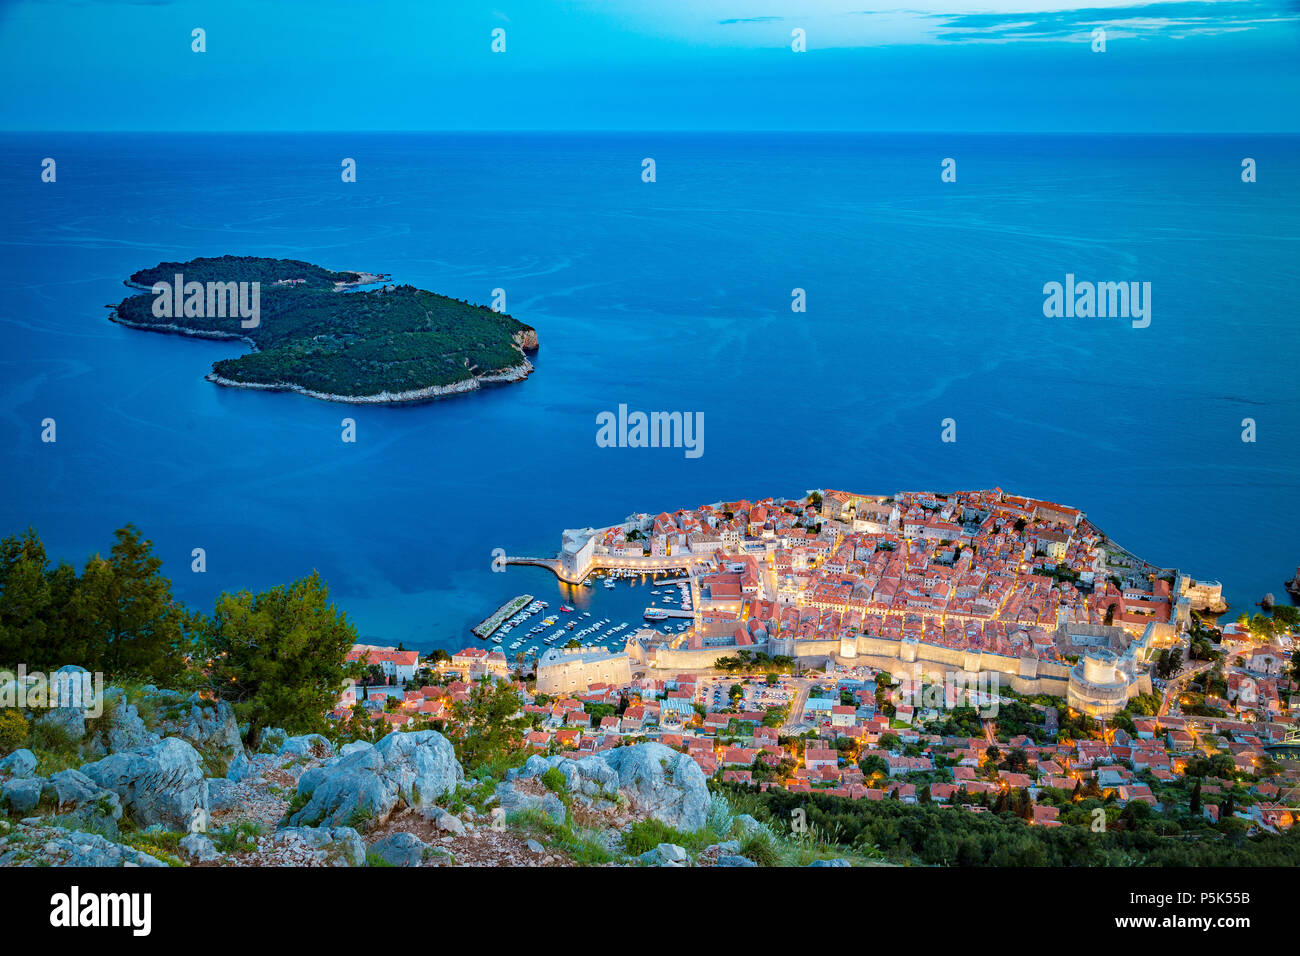 Vue panoramique vue aérienne de la ville historique de Dubrovnik avec l'île de Lokrum dans beau crépuscule du soir, au crépuscule, en Dalmatie, Croatie Banque D'Images